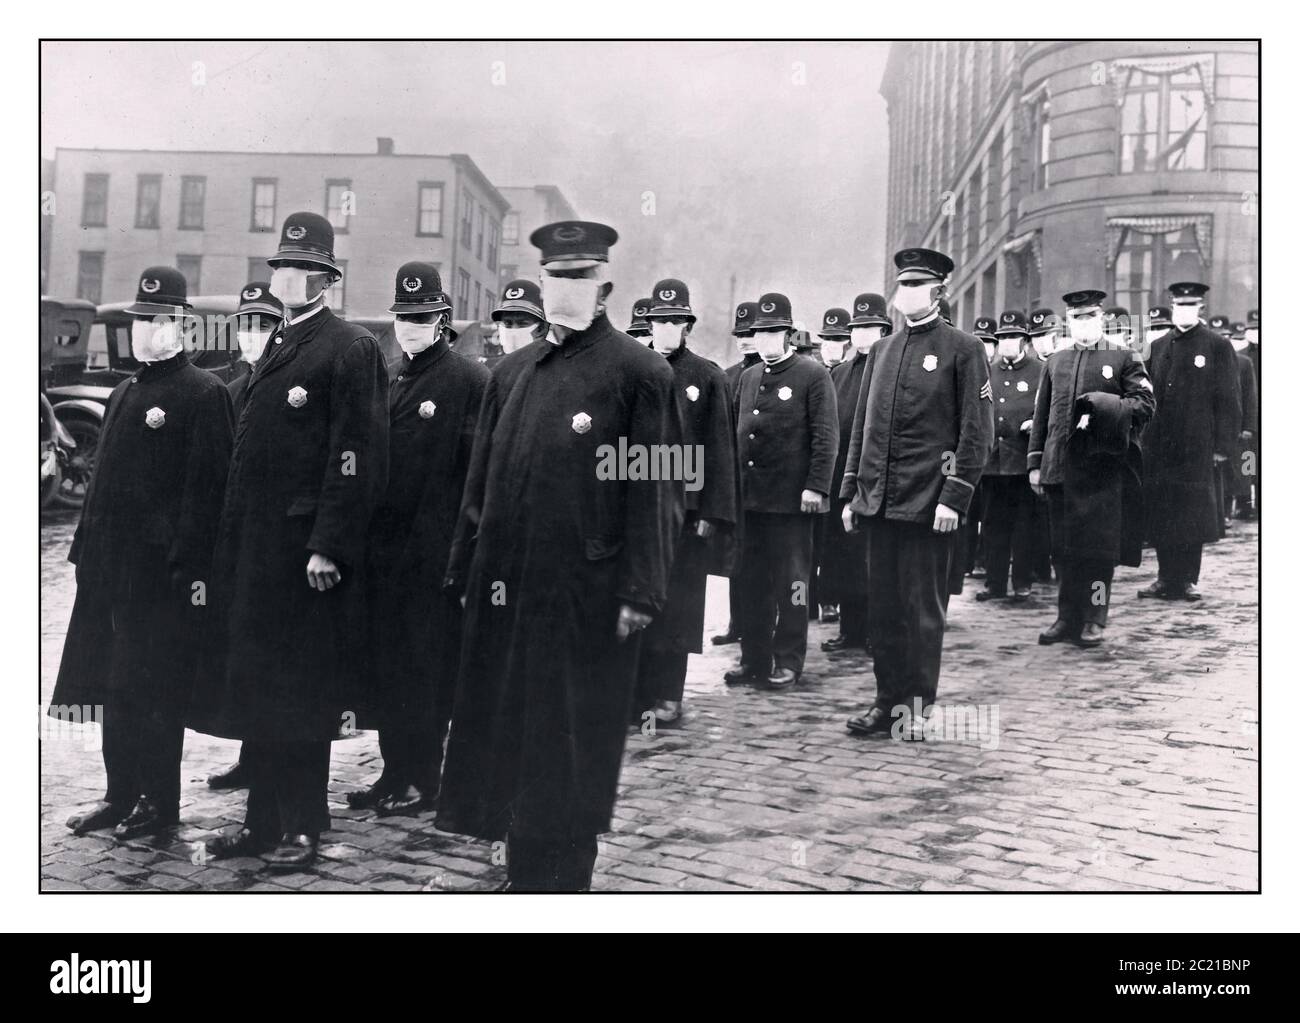 LA GRIPPE ESPAGNOLE 1918 MASQUES ARCHIVE policiers à Seattle, Washington portant des masques fabriqués par le chapitre de Seattle de la Croix-Rouge pendant l'épidémie de grippe espagnole de 1918 Etats-Unis Amérique Banque D'Images